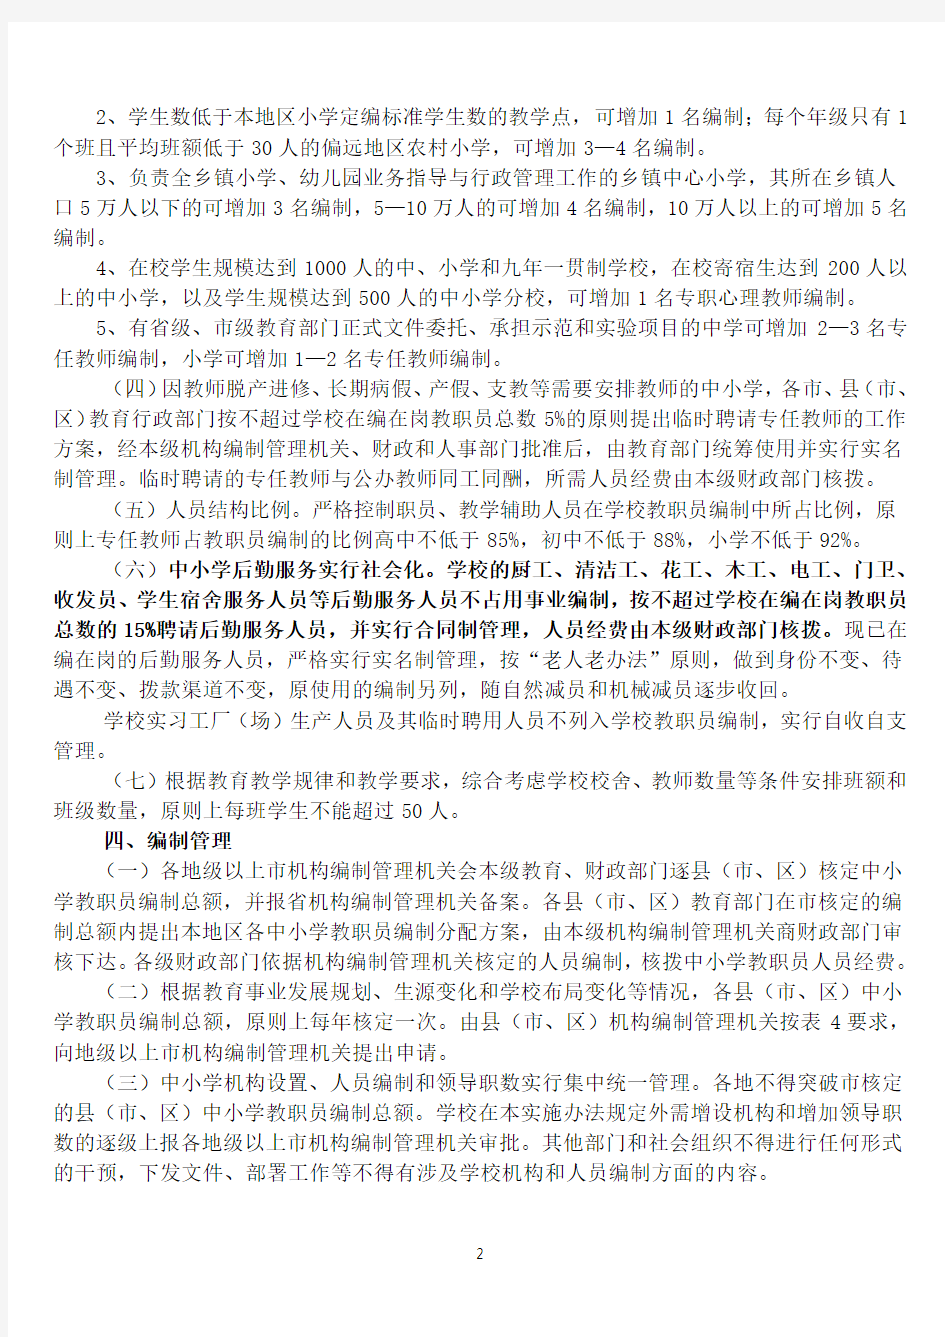 粤机编办[2008]73号广东省中小学教职员编制标准实施办法